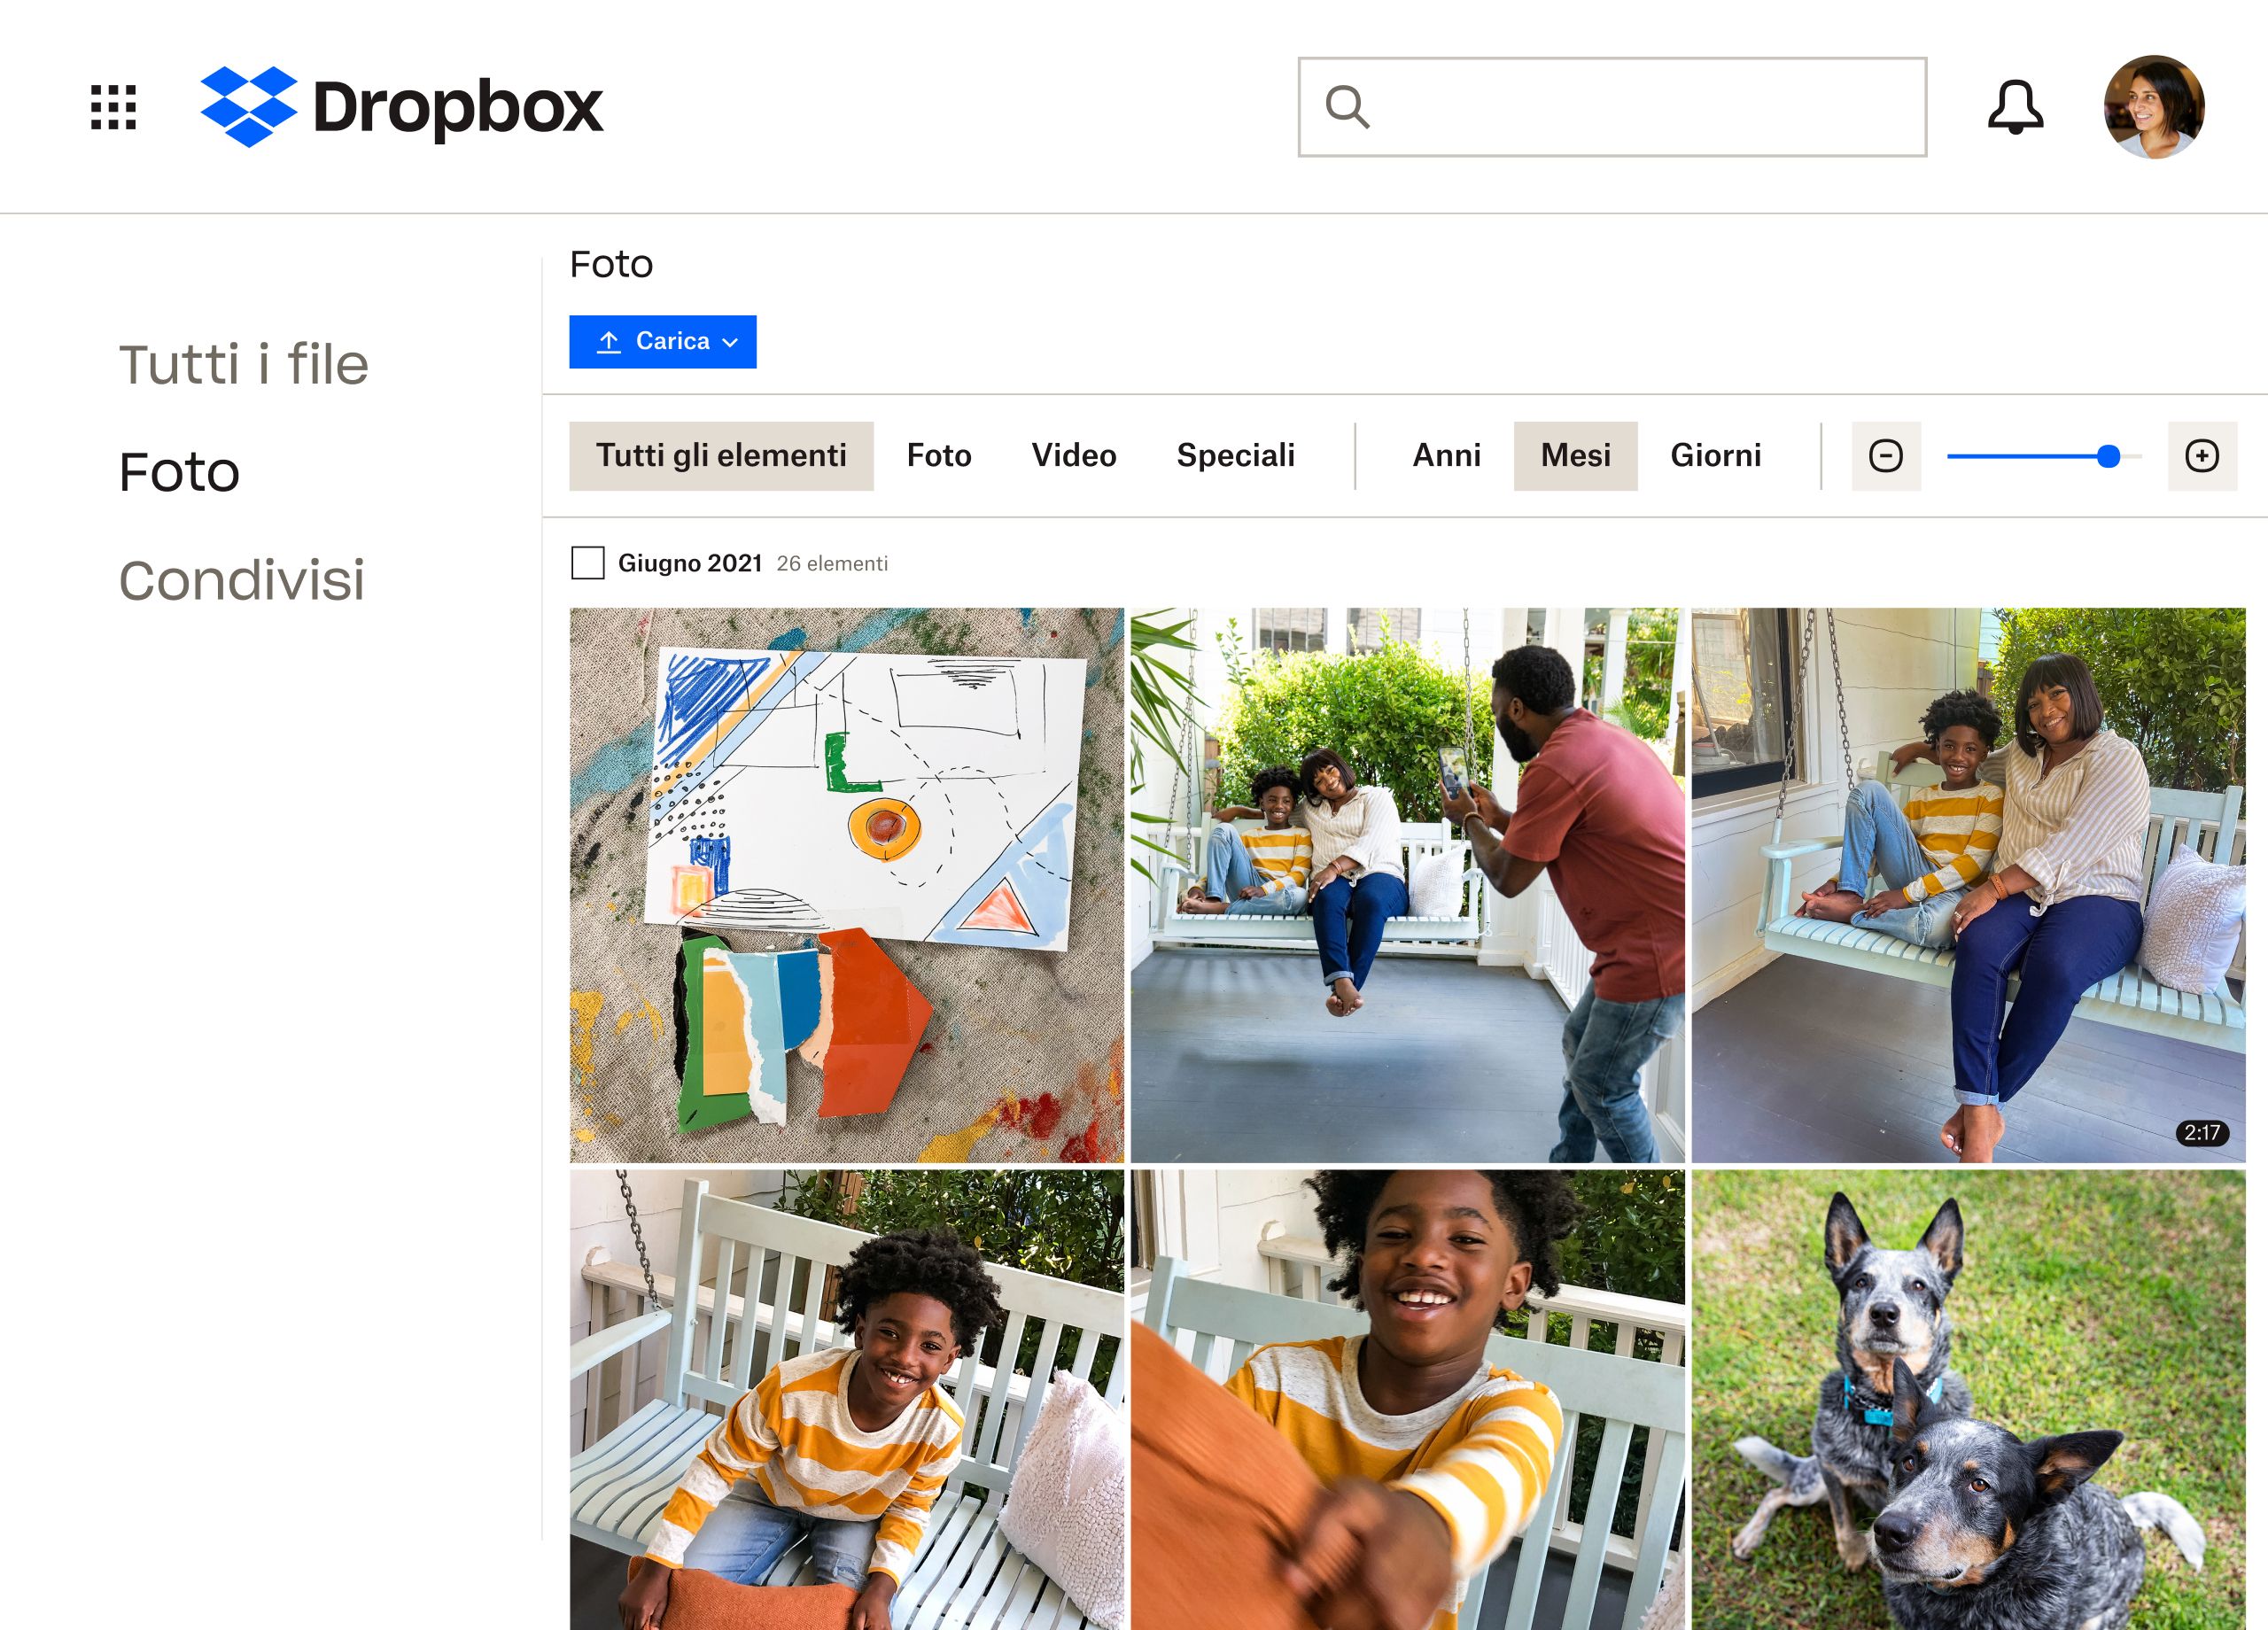 Una raccolta di immagini di una famiglia e dei loro cani che vengono salvate in una cartella Dropbox